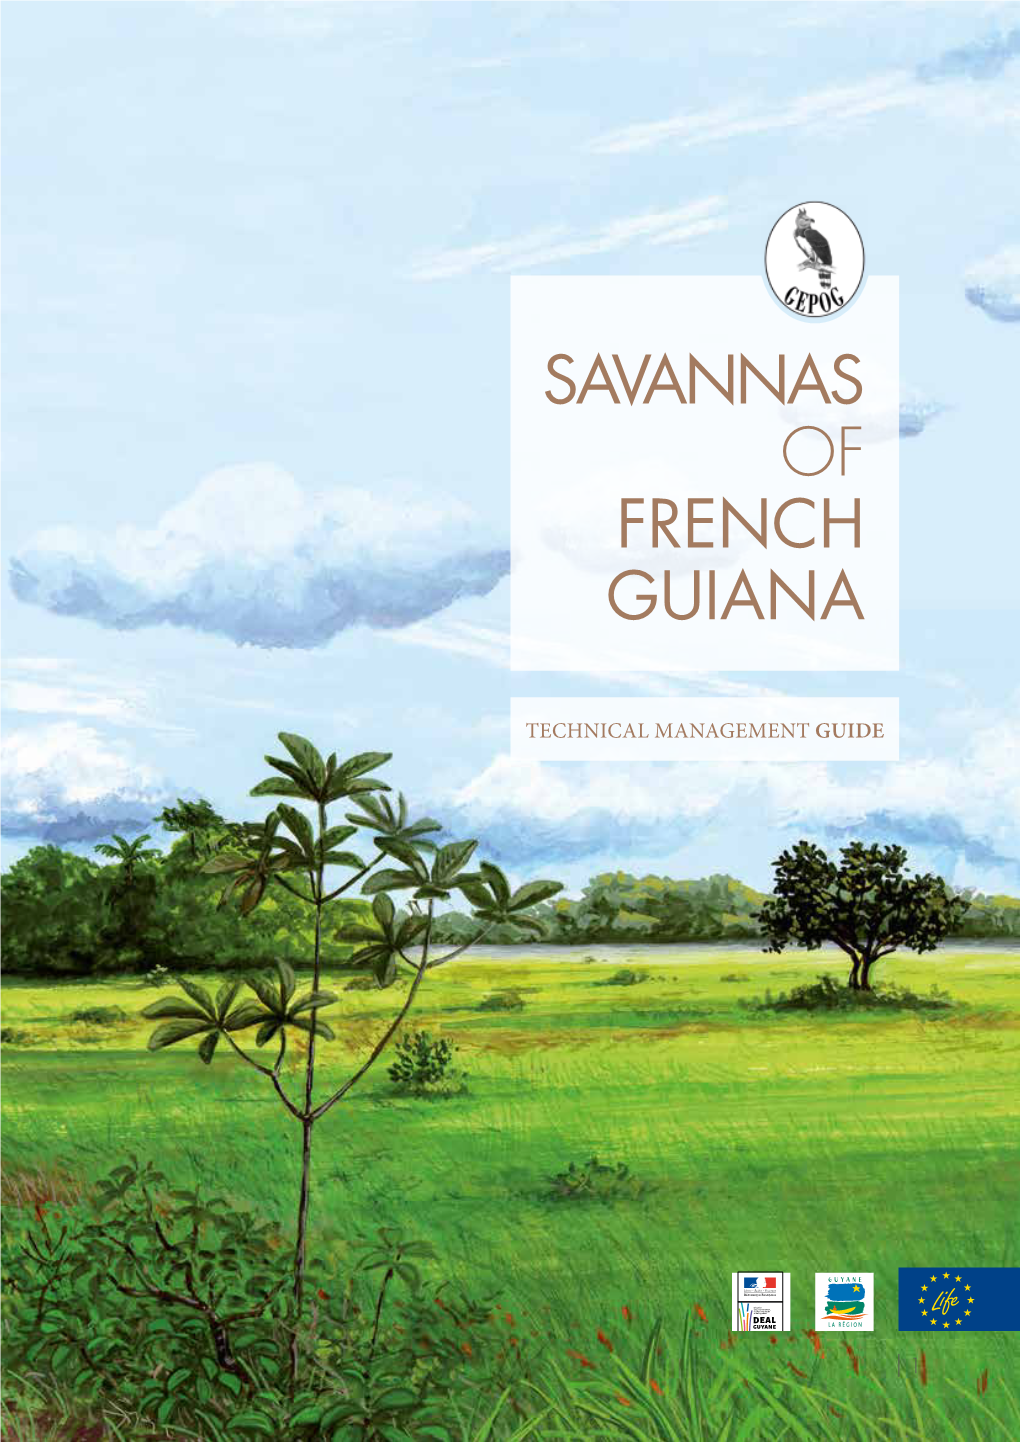 Savannas of French Guiana